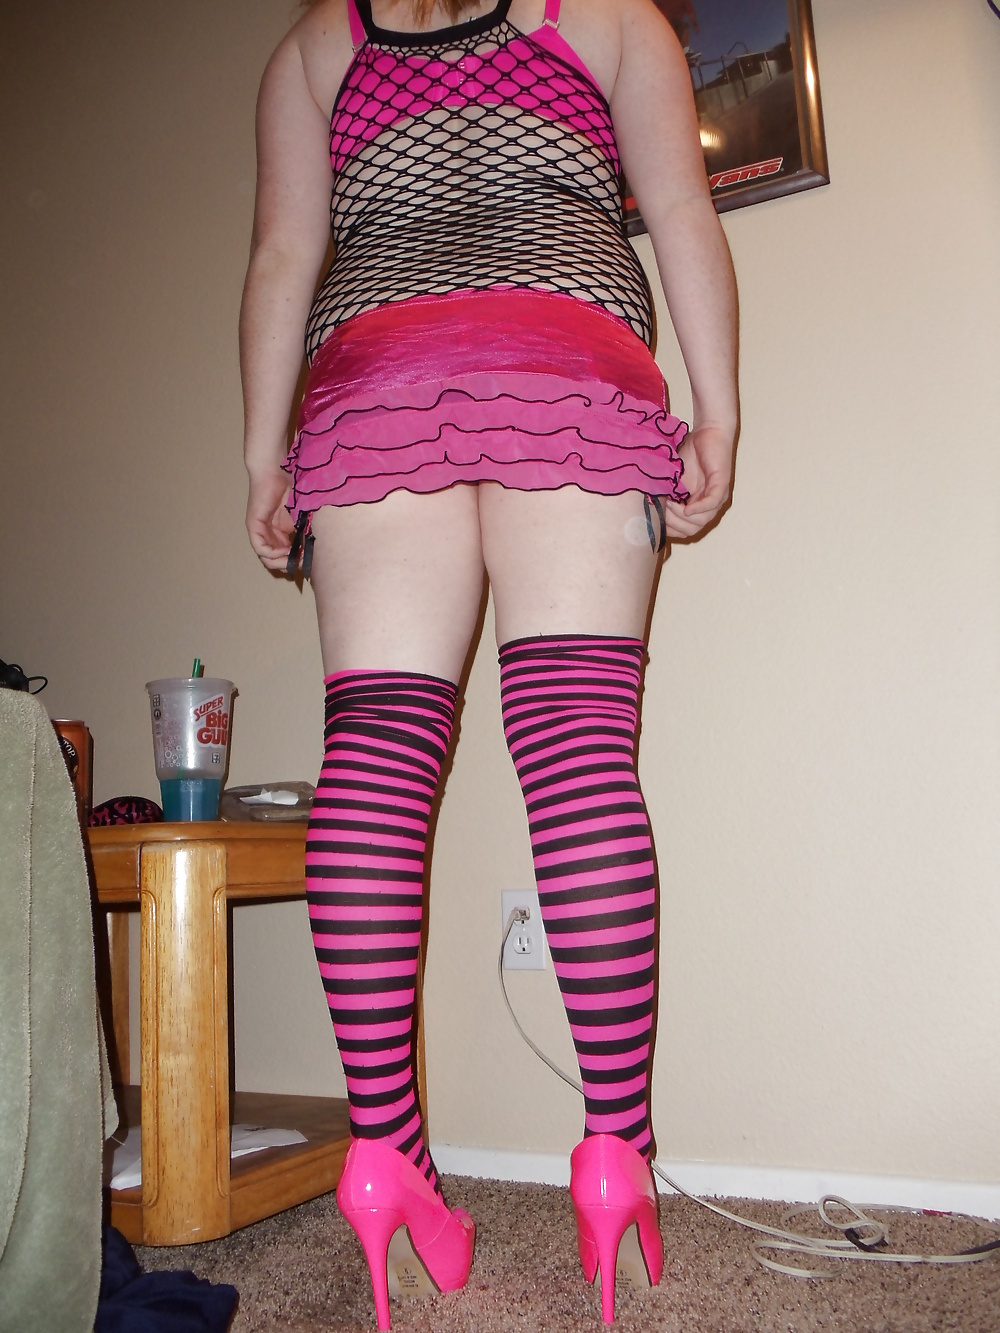 Het spreiden van mijn natte  Kutje in mijn Roze Geile Outfit #26080869